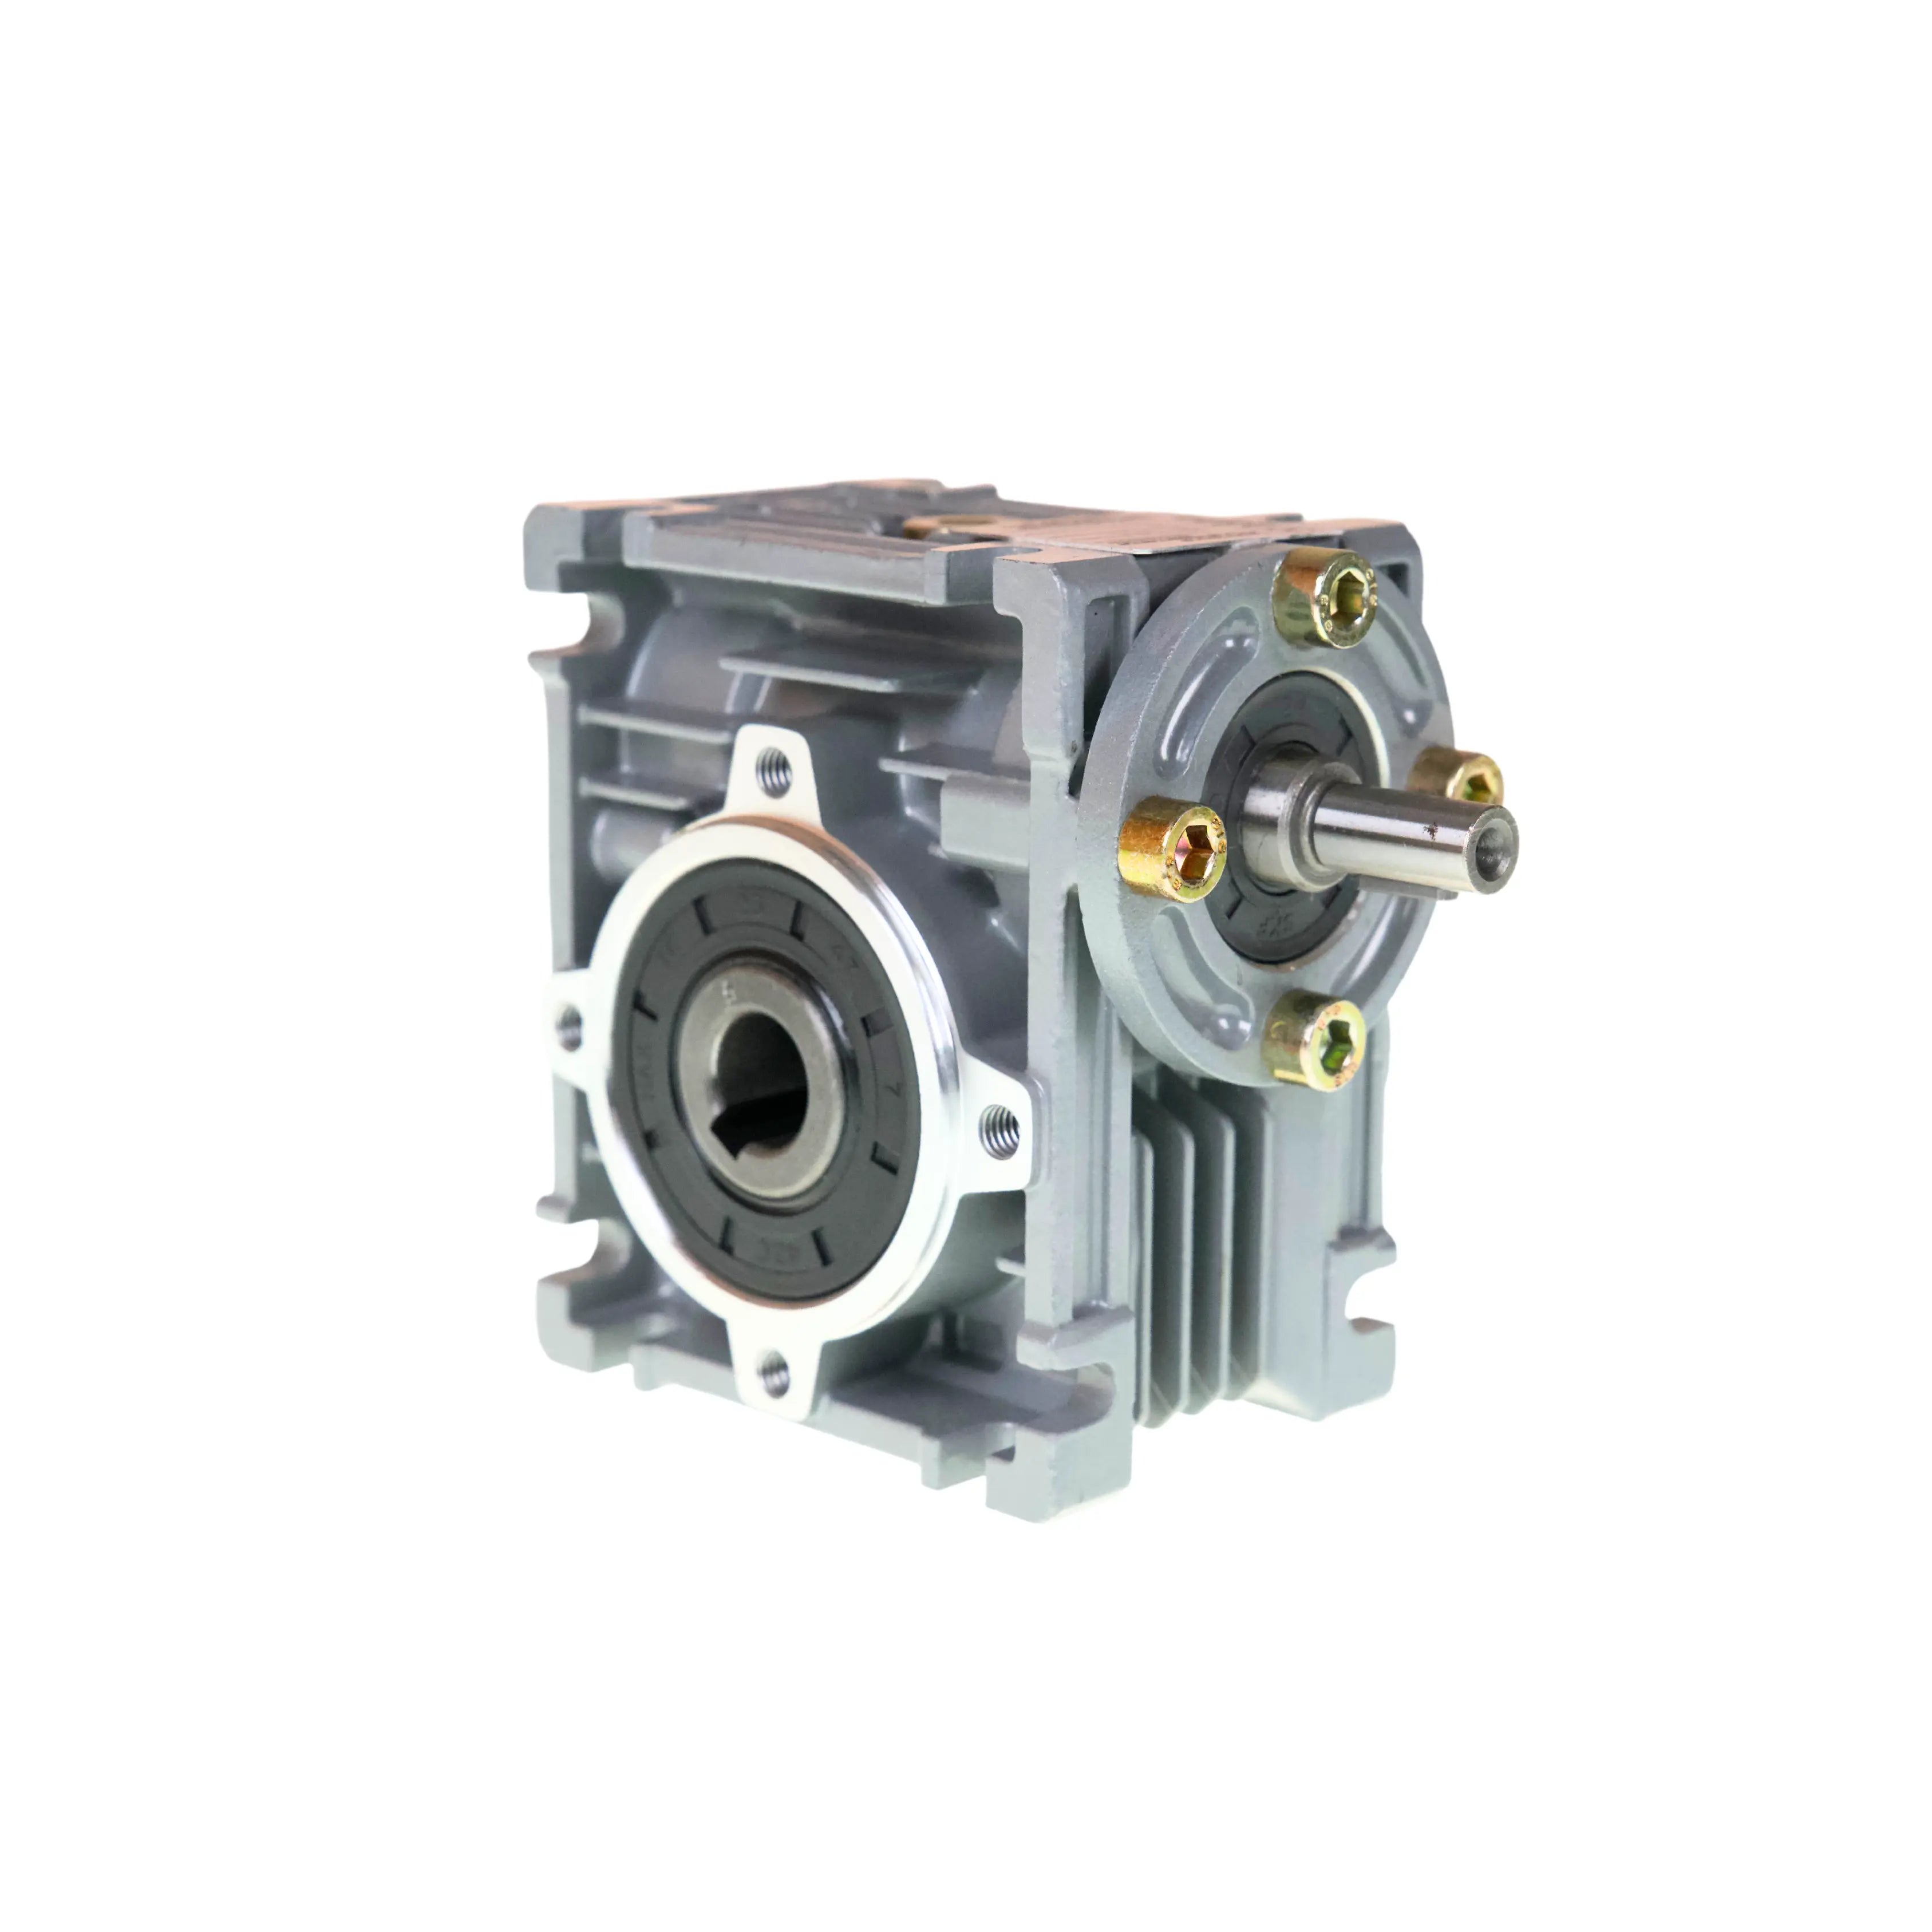 Abbildung eines Schneckengetriebes ohne Motorflansch und einem Übersetzungsverhältnis von i=50:1